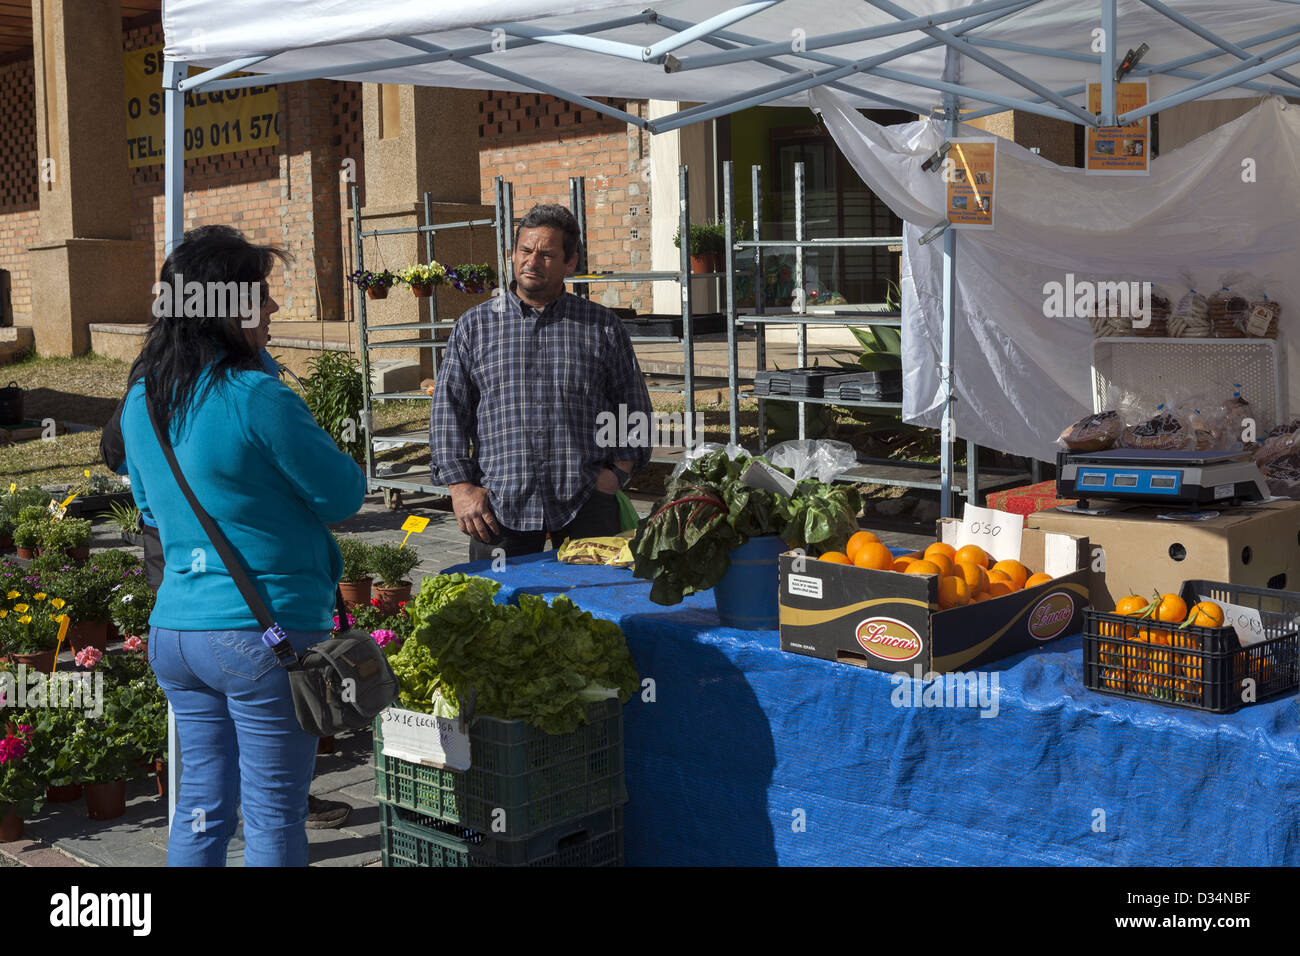 Kunden mit Standbesitzer stehen neben frischem Obst und Gemüse Marktstand Münze Andalusien Spanien Stockfoto